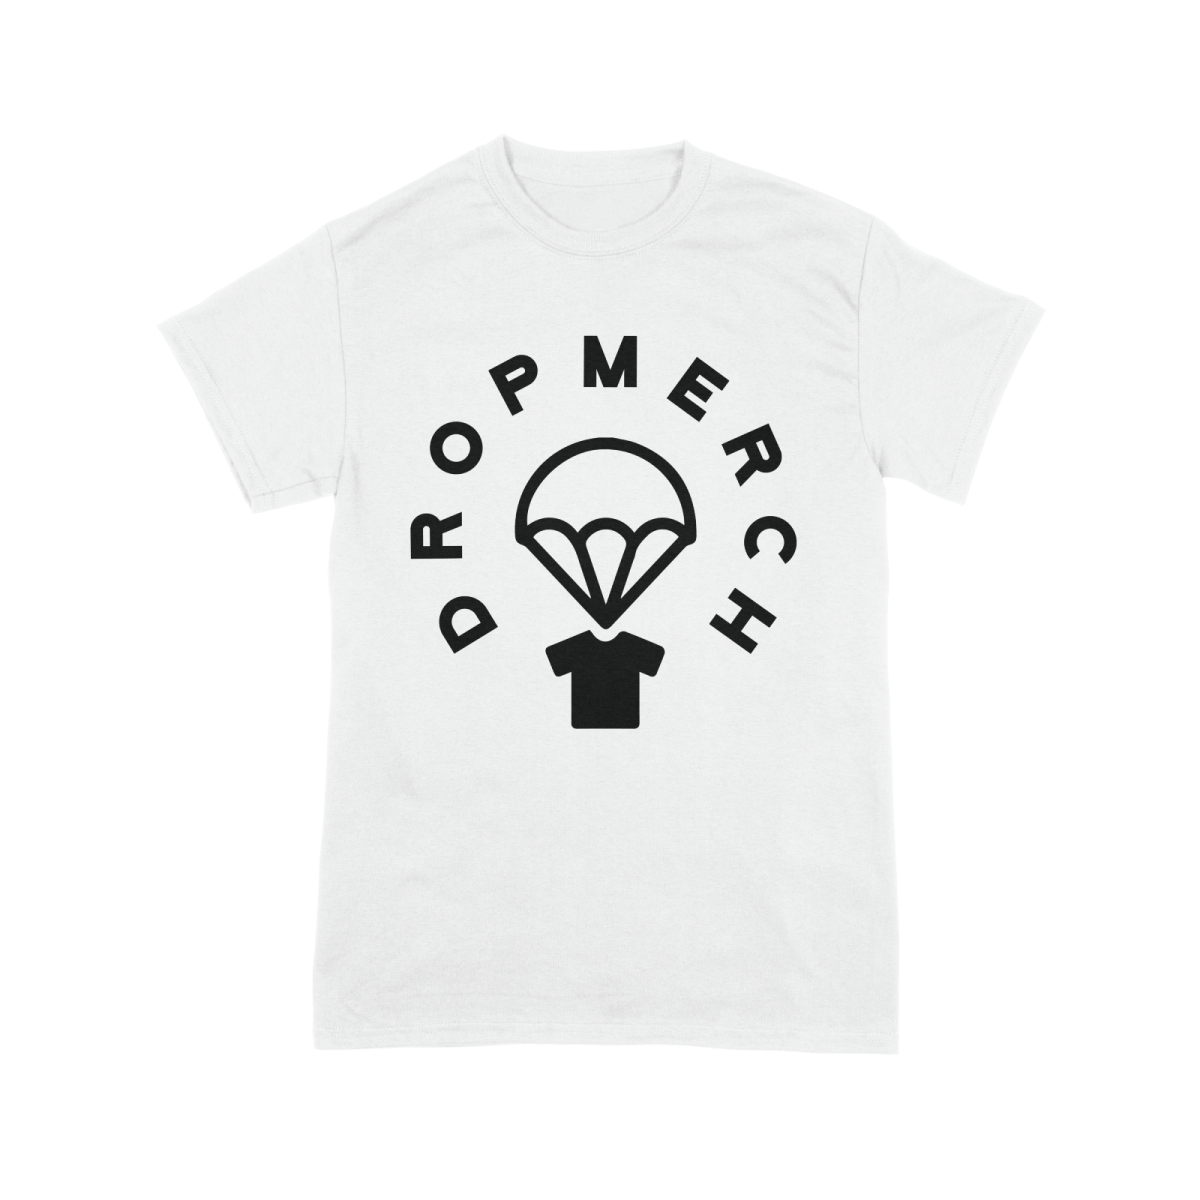 Dropmerch Circle Logo - Dropmerch